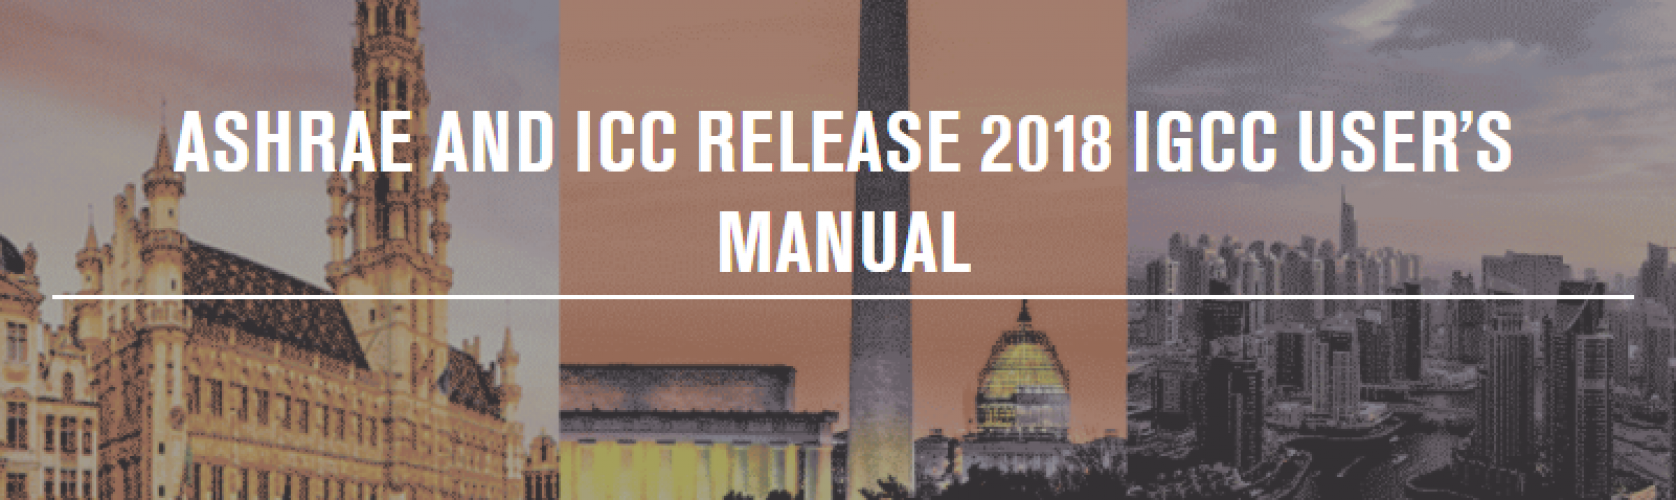 ASHRAE and ICC Release 2018 IgCC User’s Manual